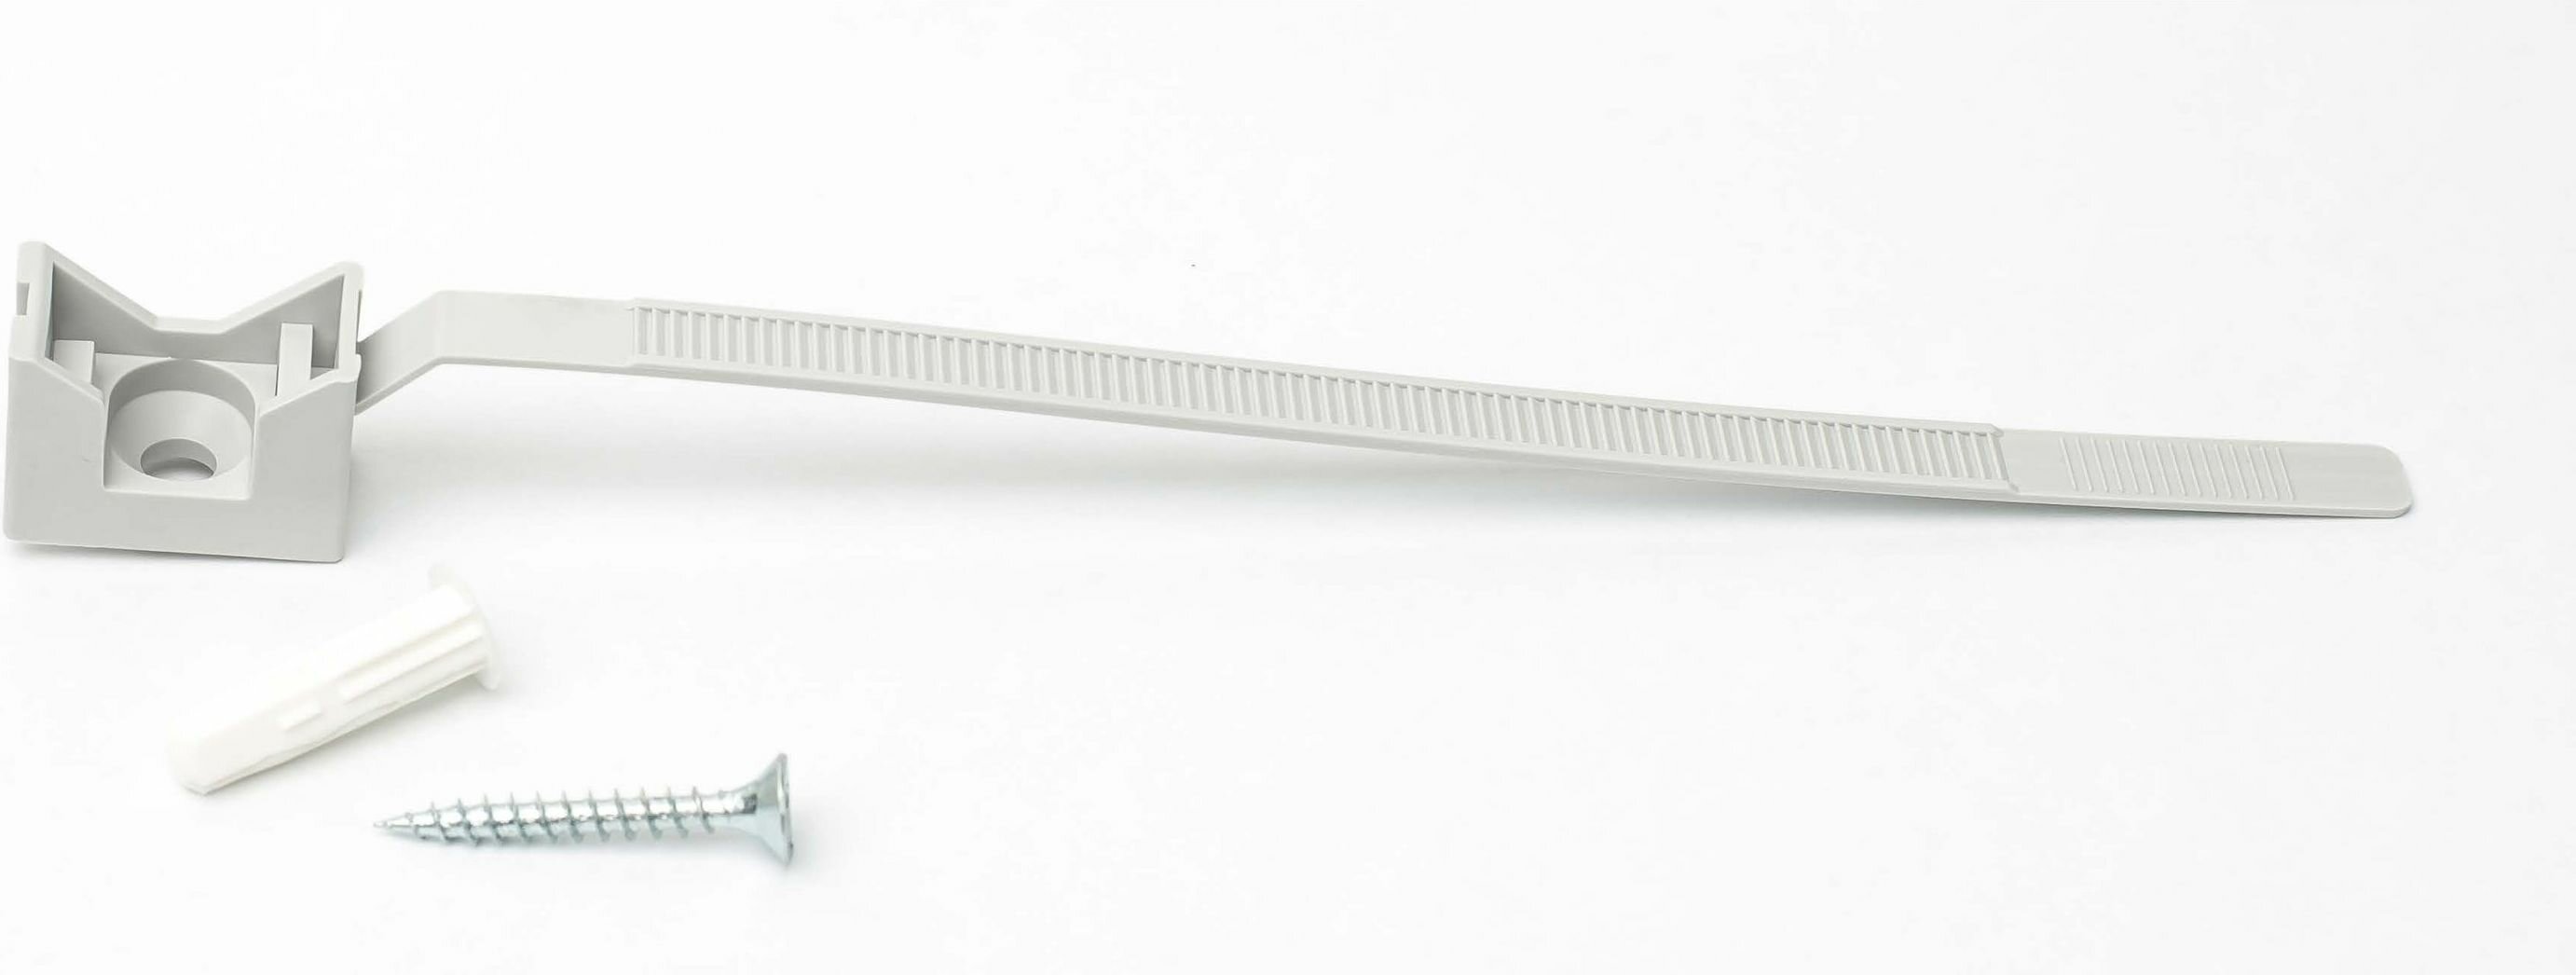 Ремешок для труб и кабеля европартнер PRNT 16-32 серый 10шт. 3 0024 9